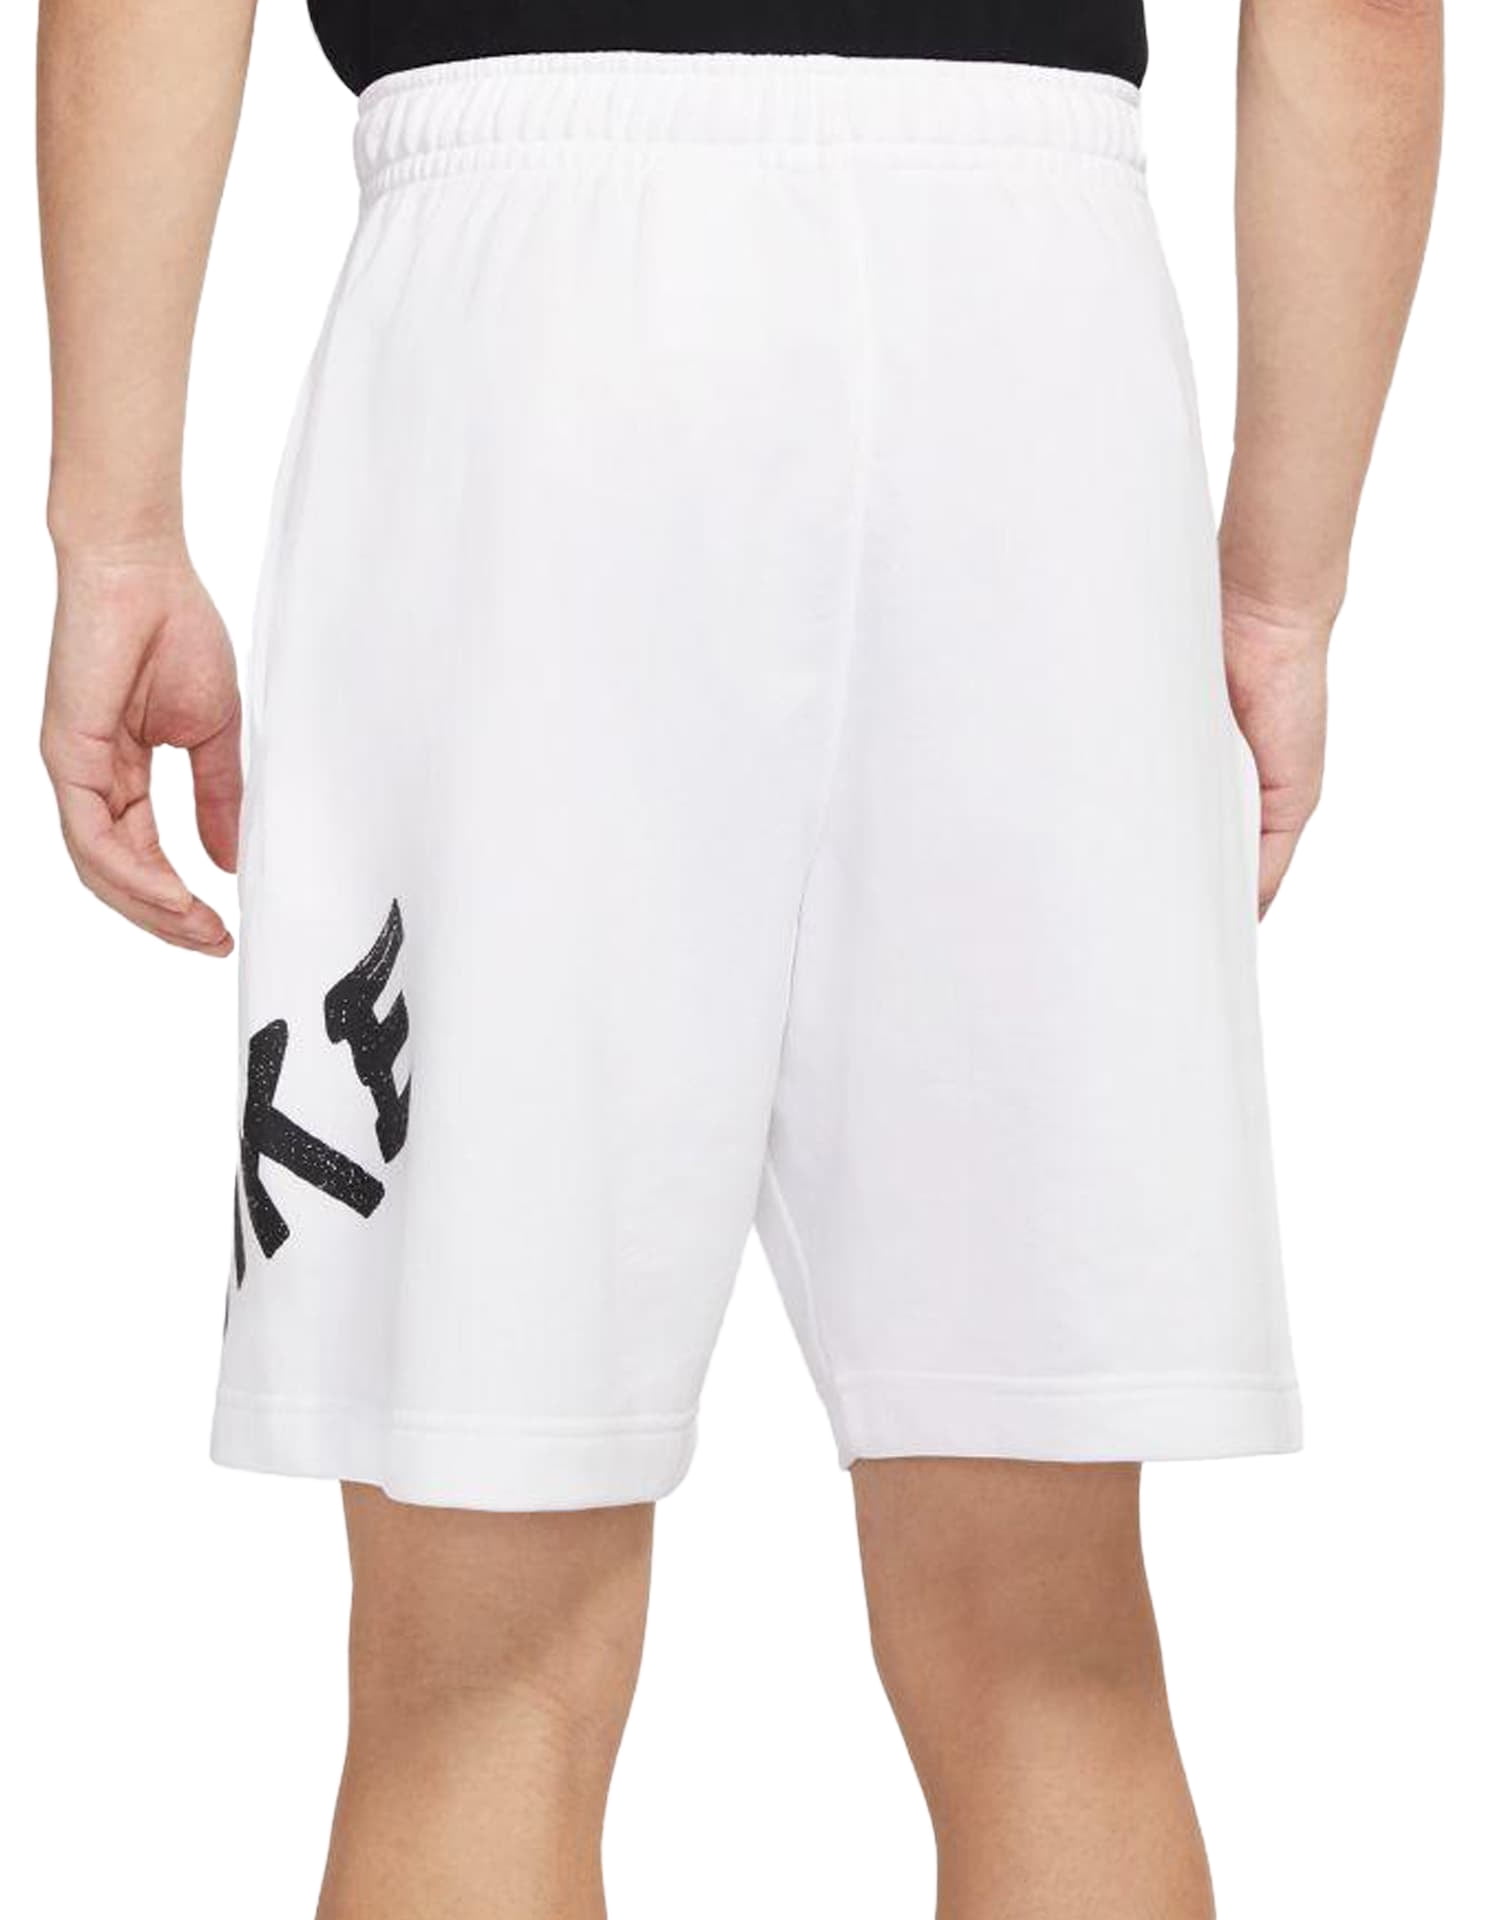 Jordan shorts 4xl 